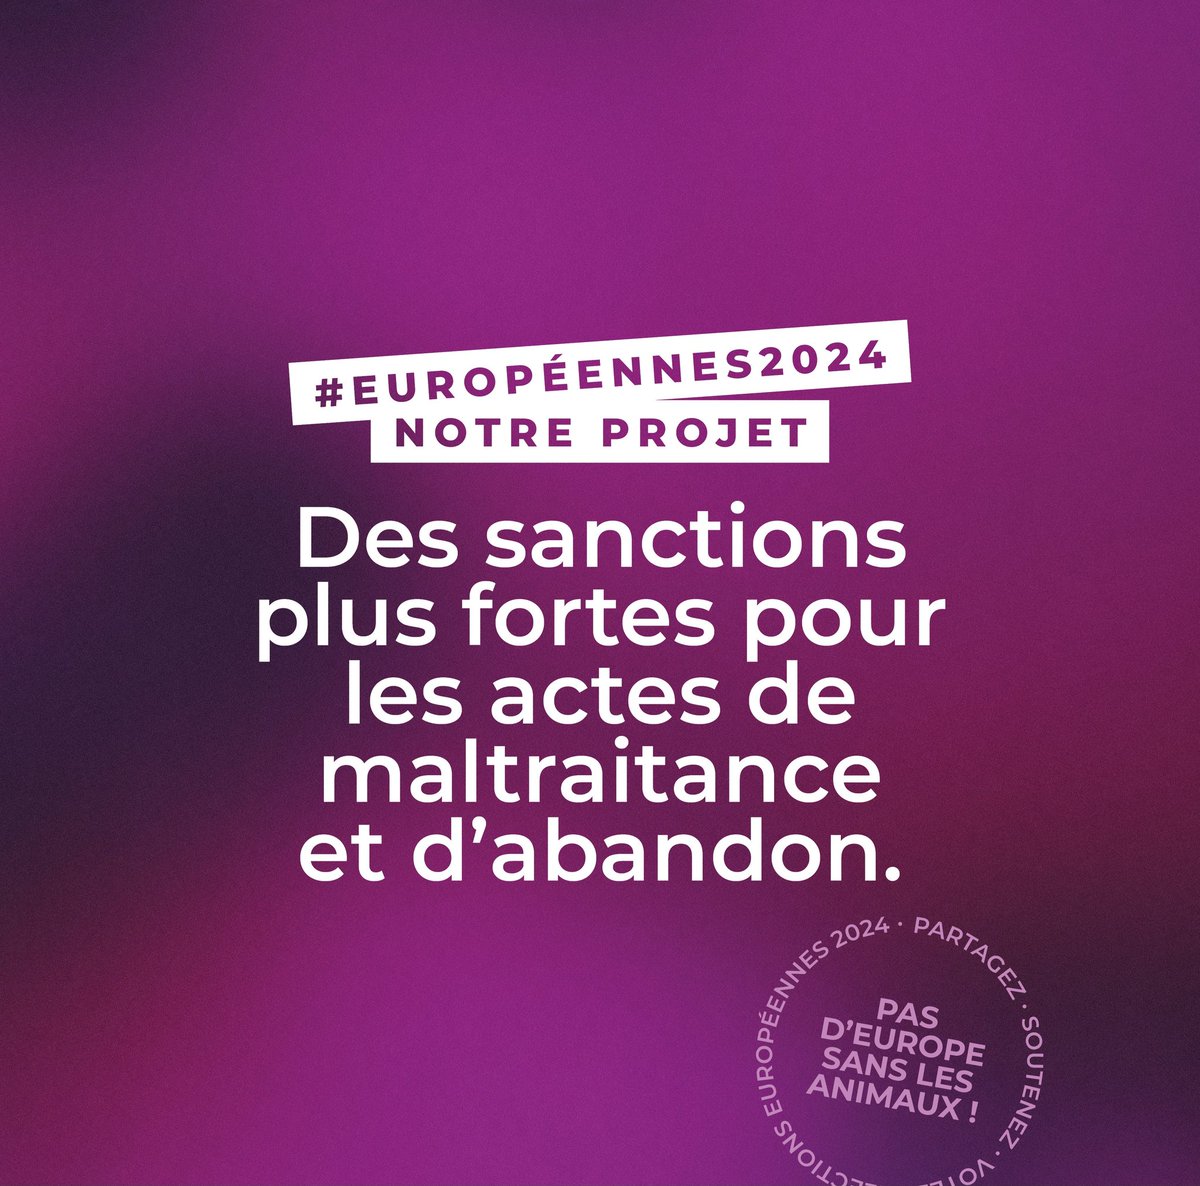 🟣 Un jour, une mesure pour les élections #européennes2024 !

#LesAnimauxComptent #OnRecolteCeQueLonVote #PasDeuropeSansLesAnimaux 👇